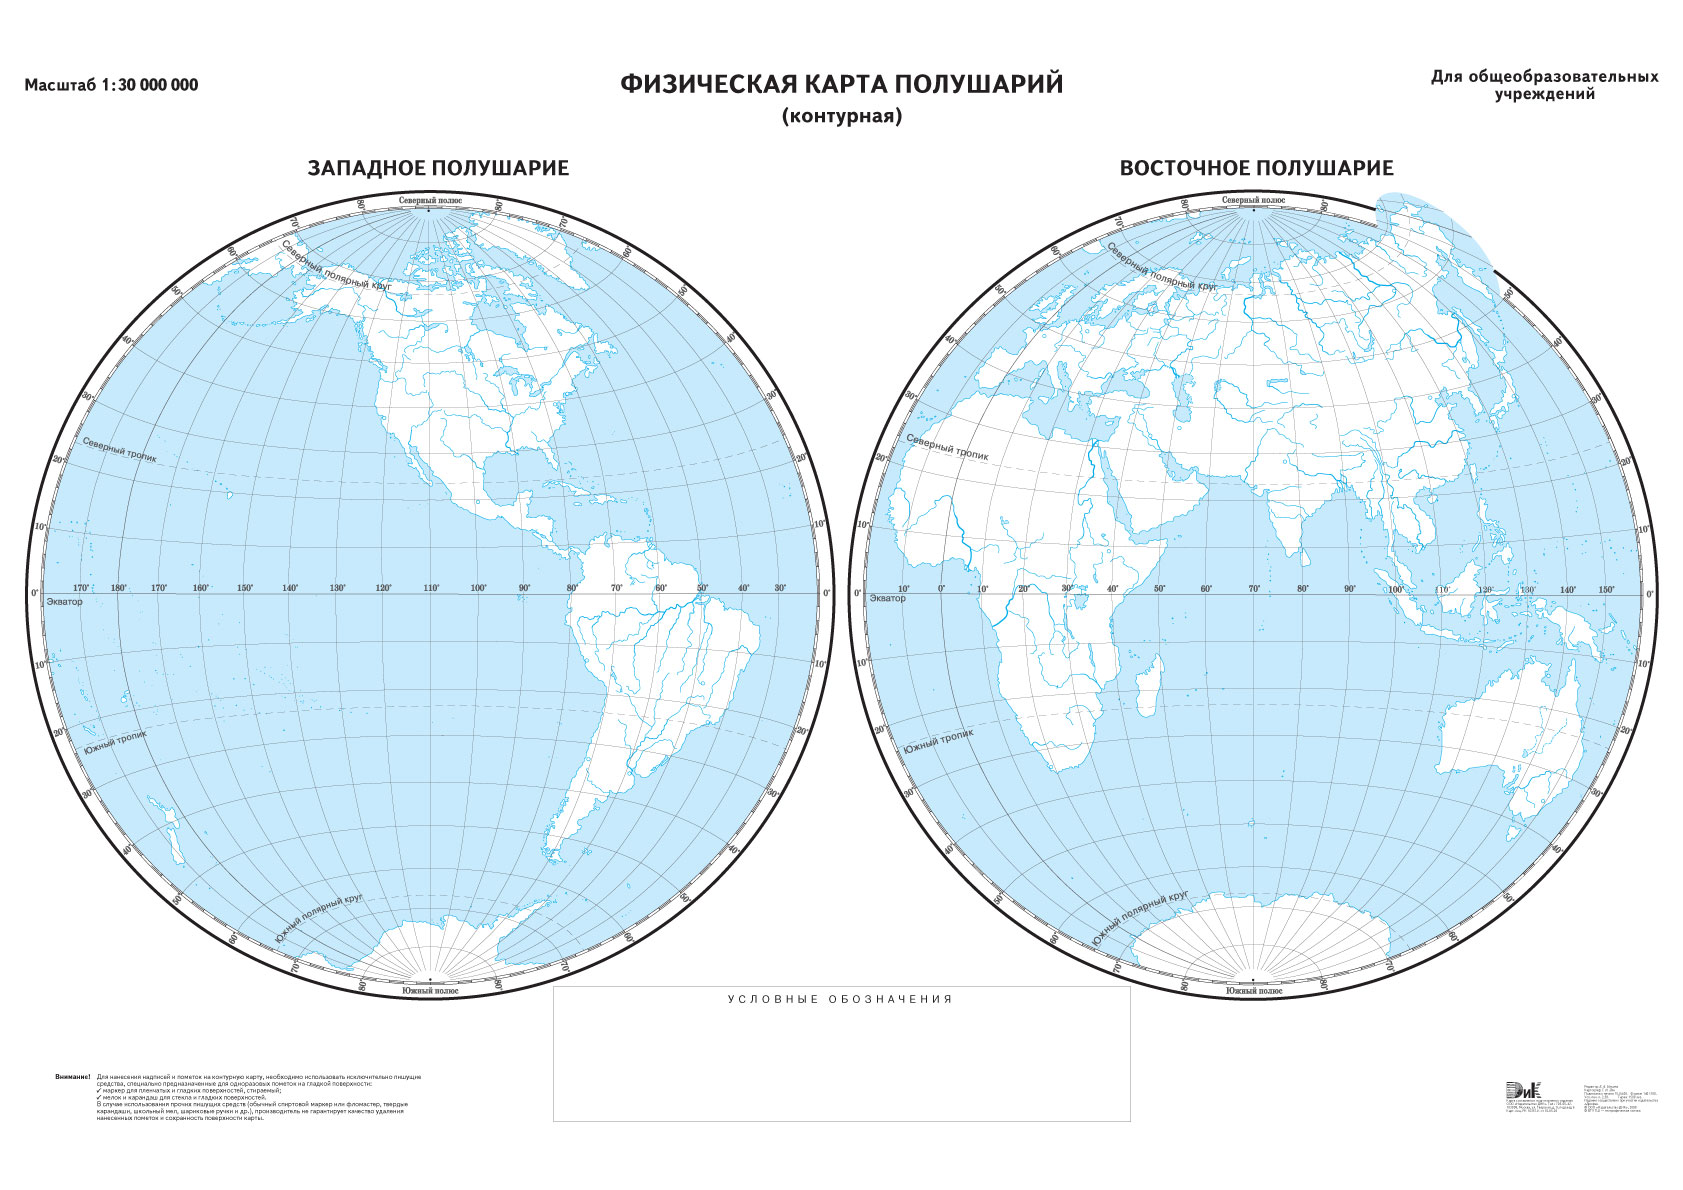 Полушарие лондона. Полушария земли контурная карта. Два полушария земли контурная карта. Физическая карта полушарий Восточное полушарие контурные карты. Контурная карта полушарий неподписанная.